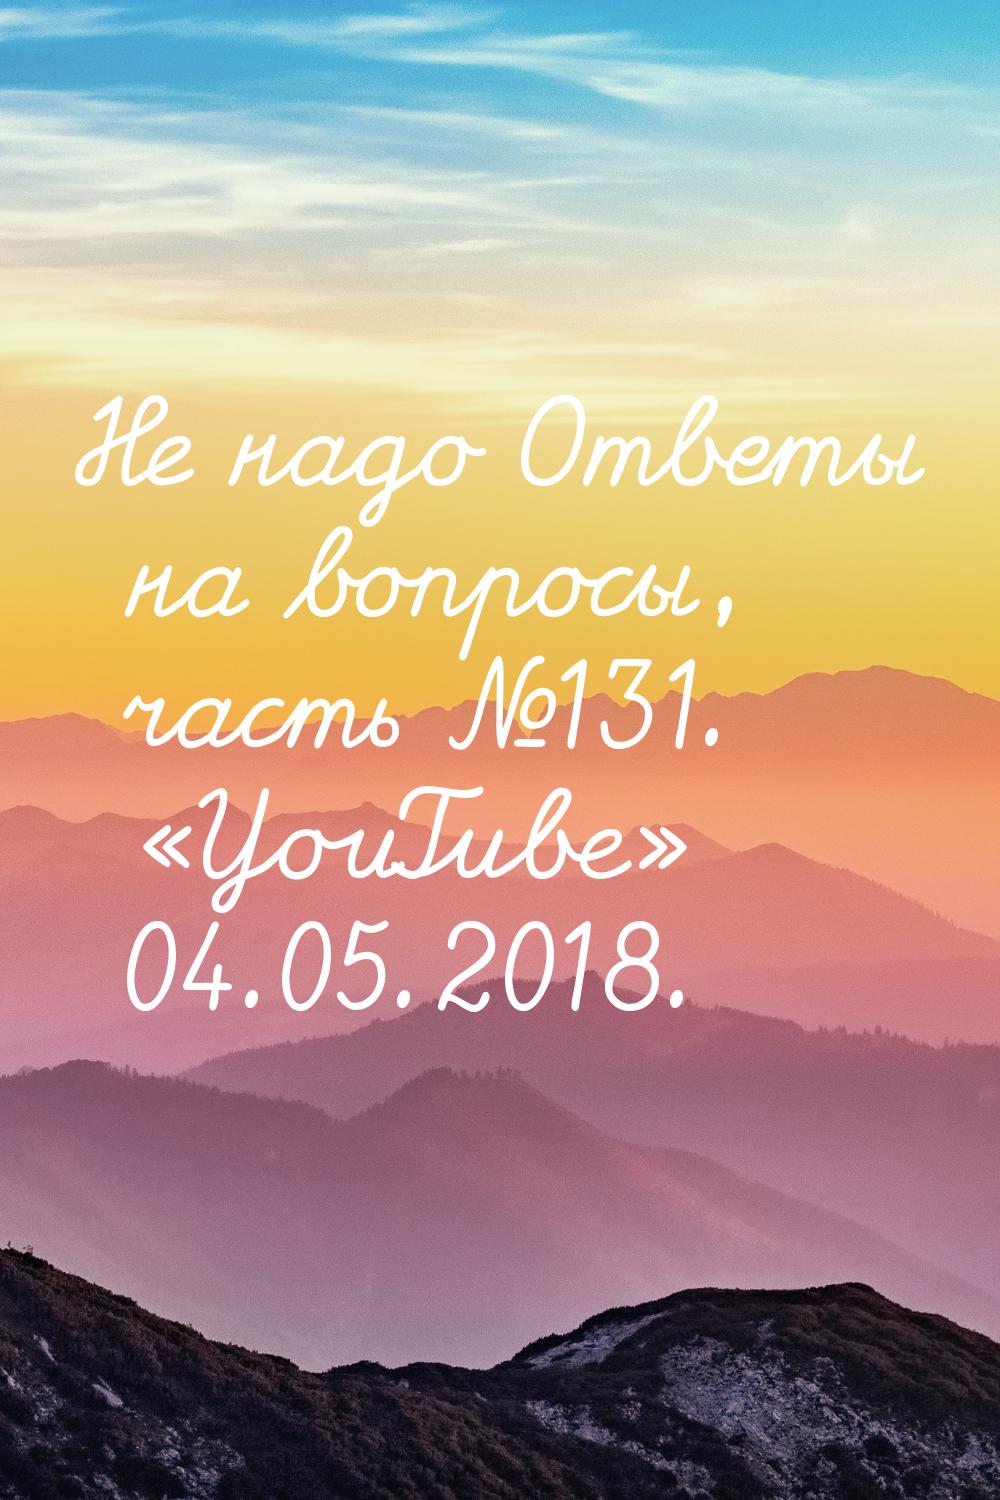 Не надо Ответы на вопросы, часть №131. «YouTube» 04.05.2018.